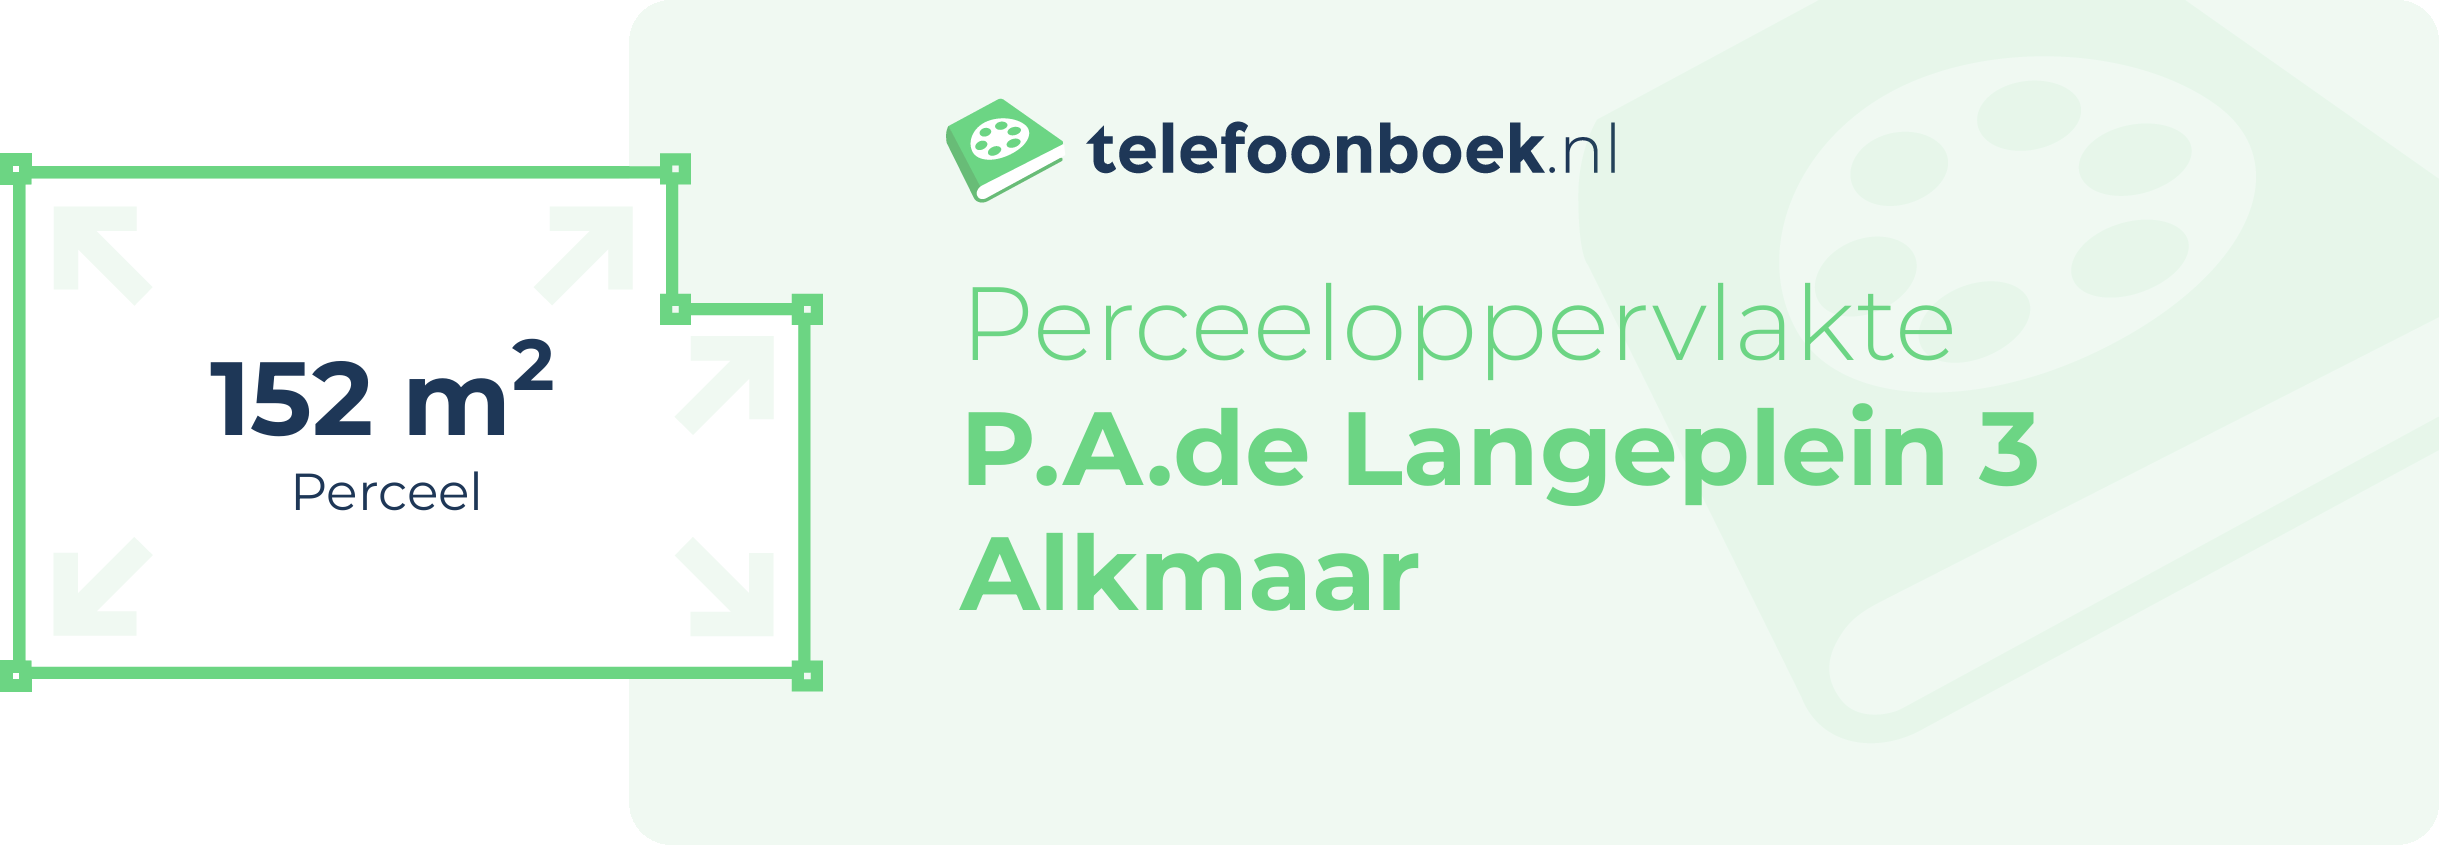 Perceeloppervlakte P.A.de Langeplein 3 Alkmaar